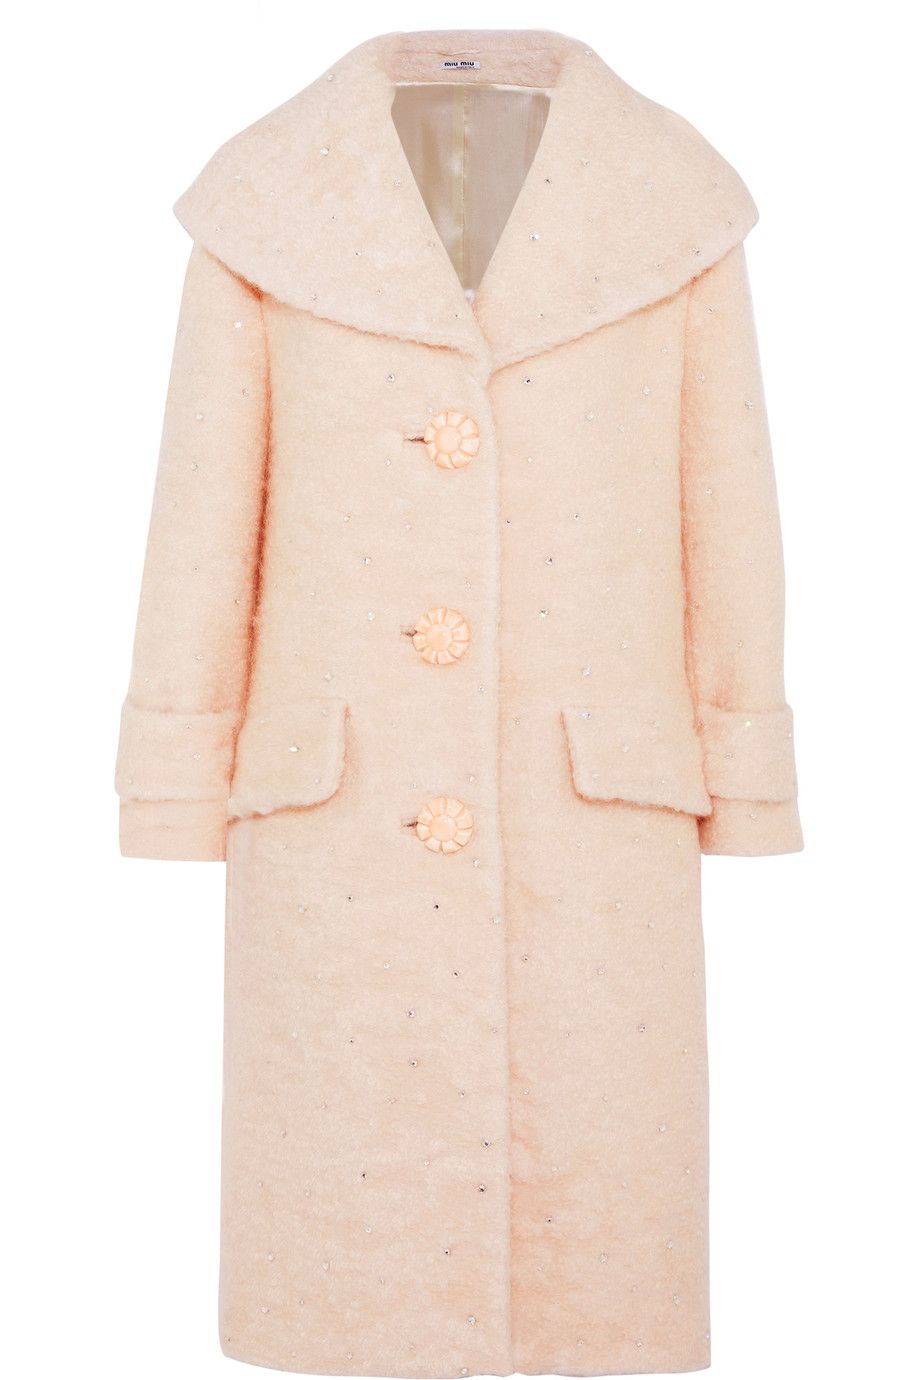 teddy coat cappotti inverno 2018 come il modello rosa con micro cristalli di miu miu